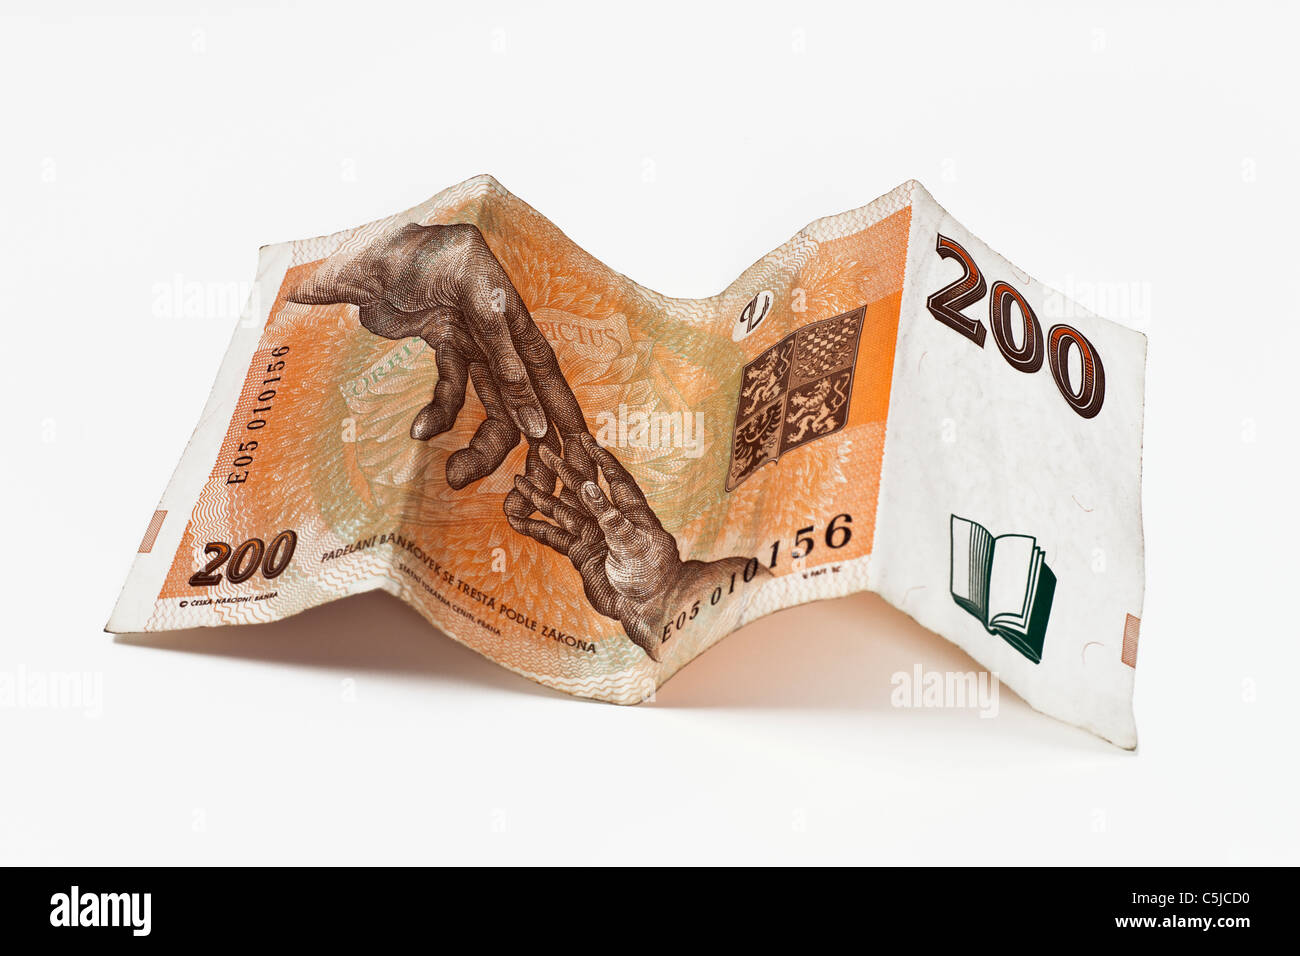 Rückseite Einer Tschechischen 200 Kronen Banknote | Rückseite einer tschechischen 200 Kronen Banknote Stockfoto